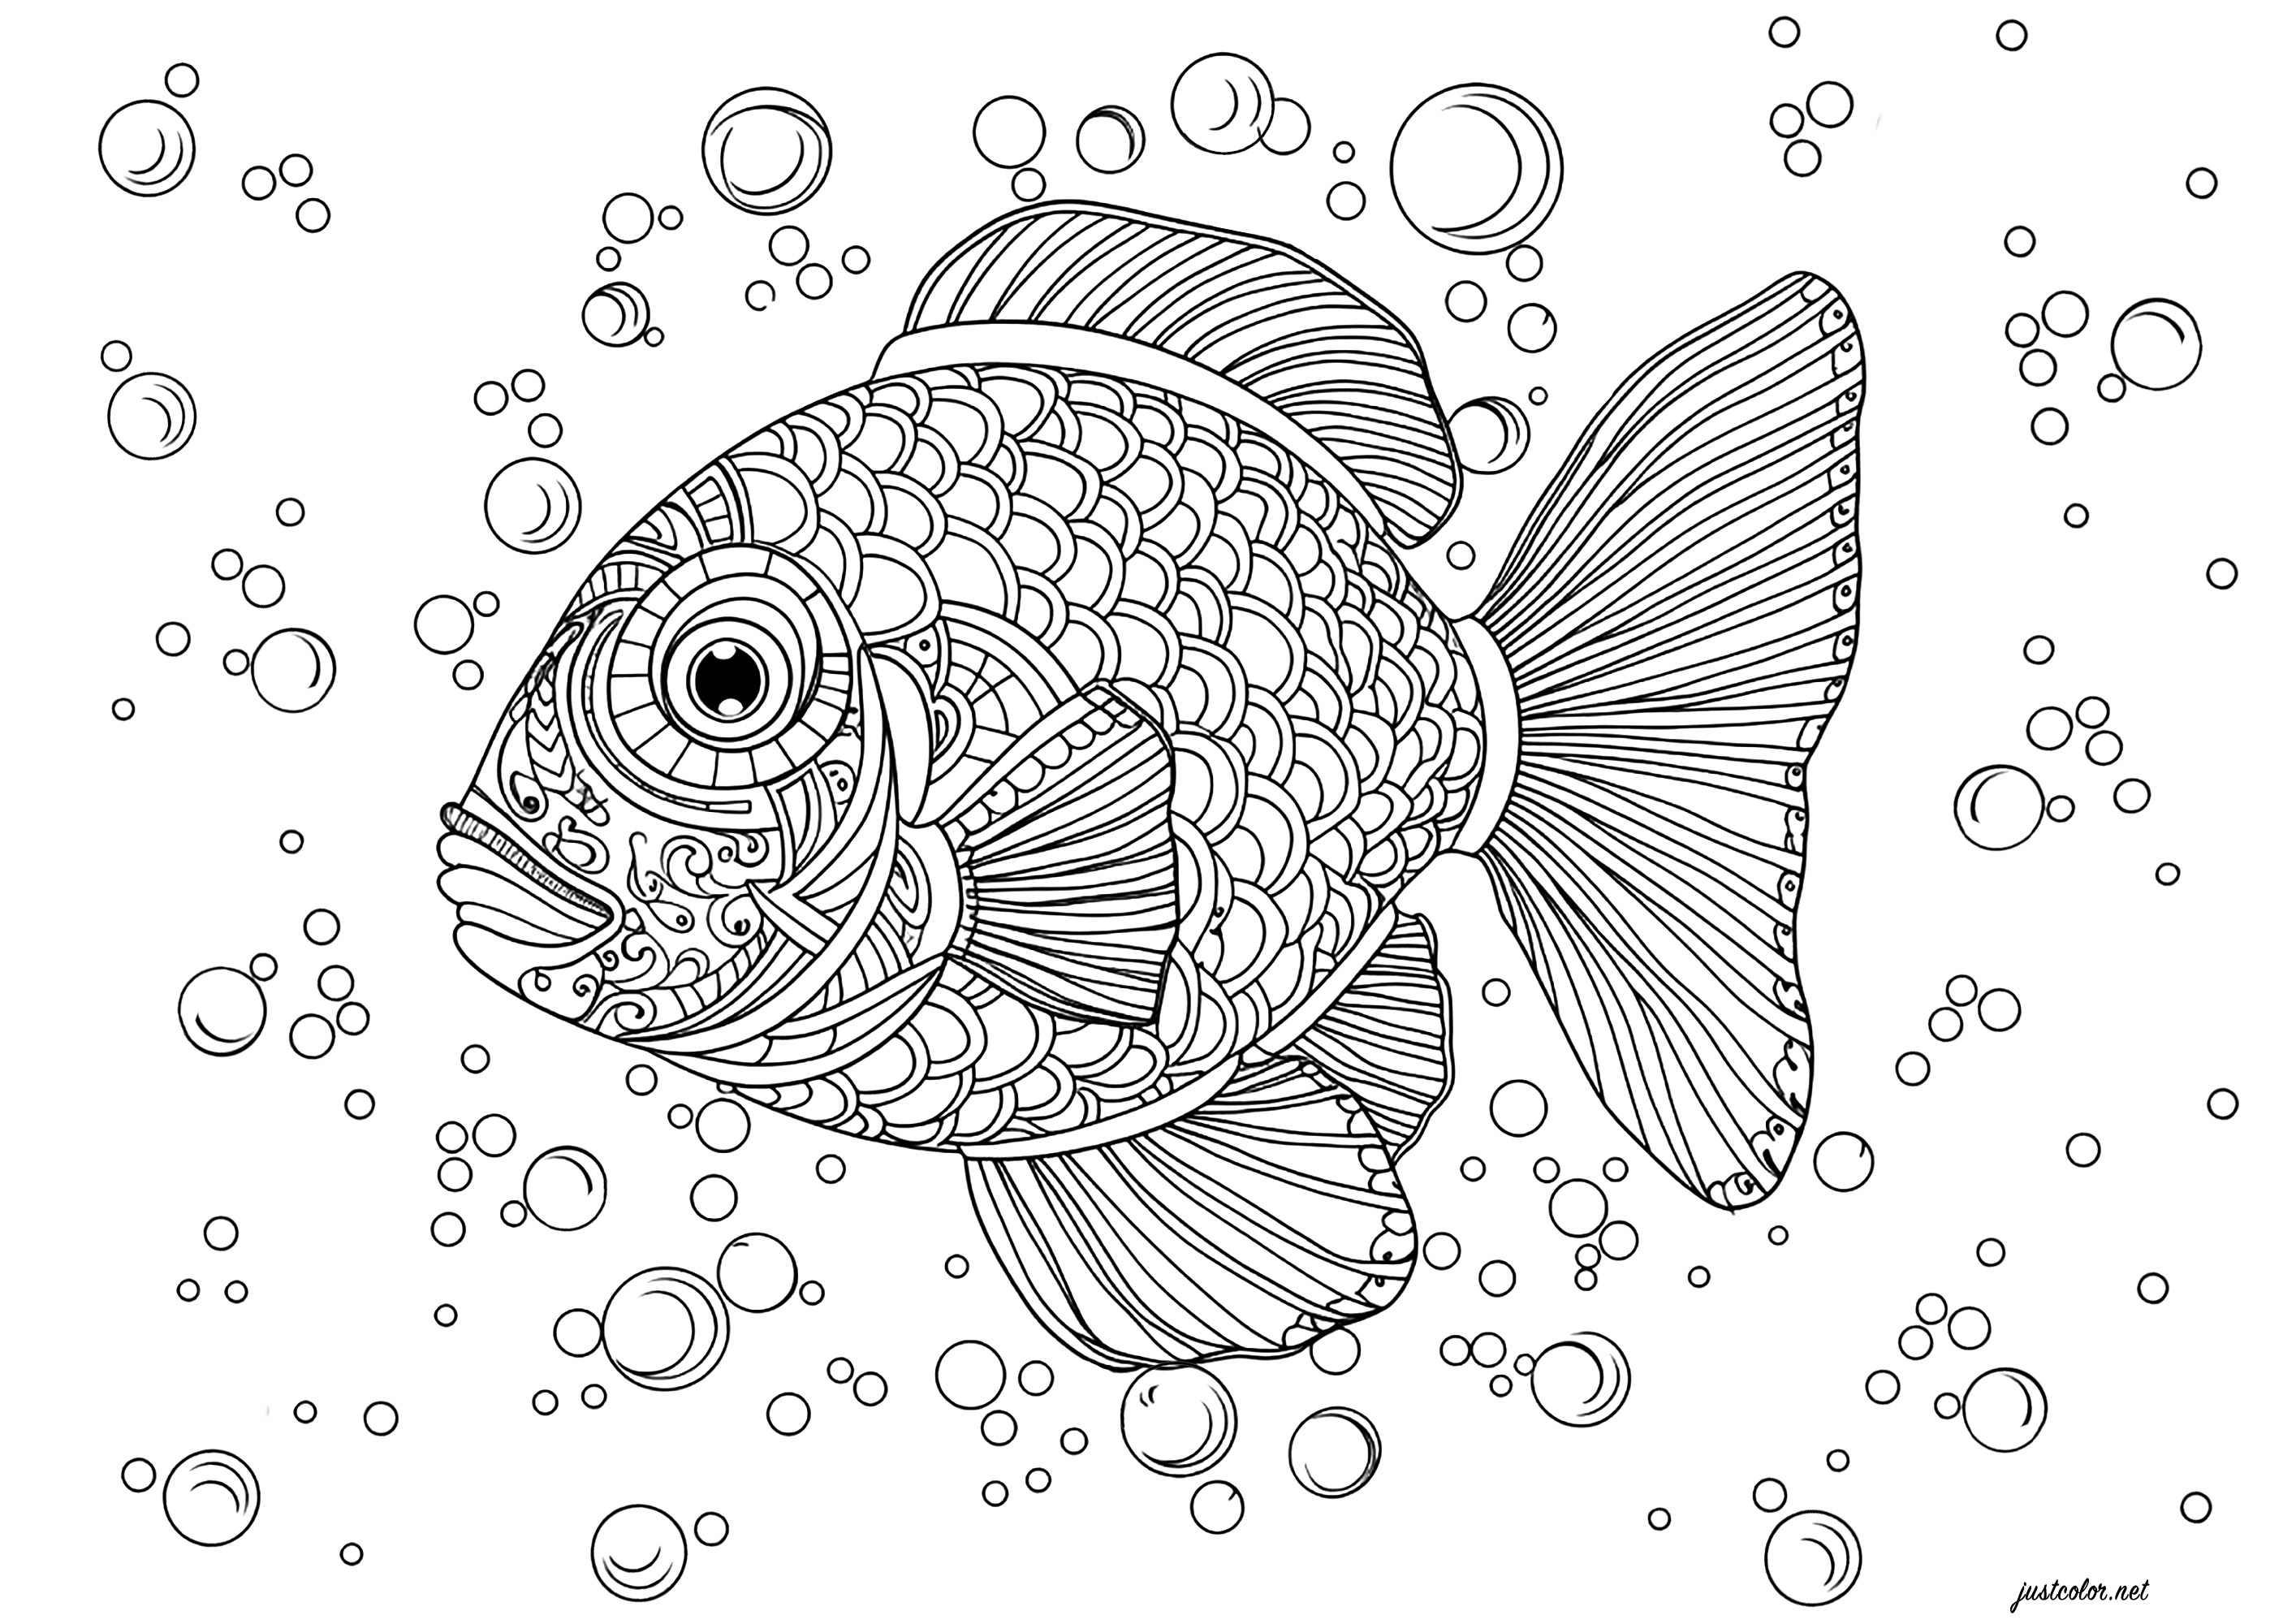 Um belo peixe cheio de escamas para colorir. Este peixe pormenorizado está rodeado de bolhas de diferentes tamanhos